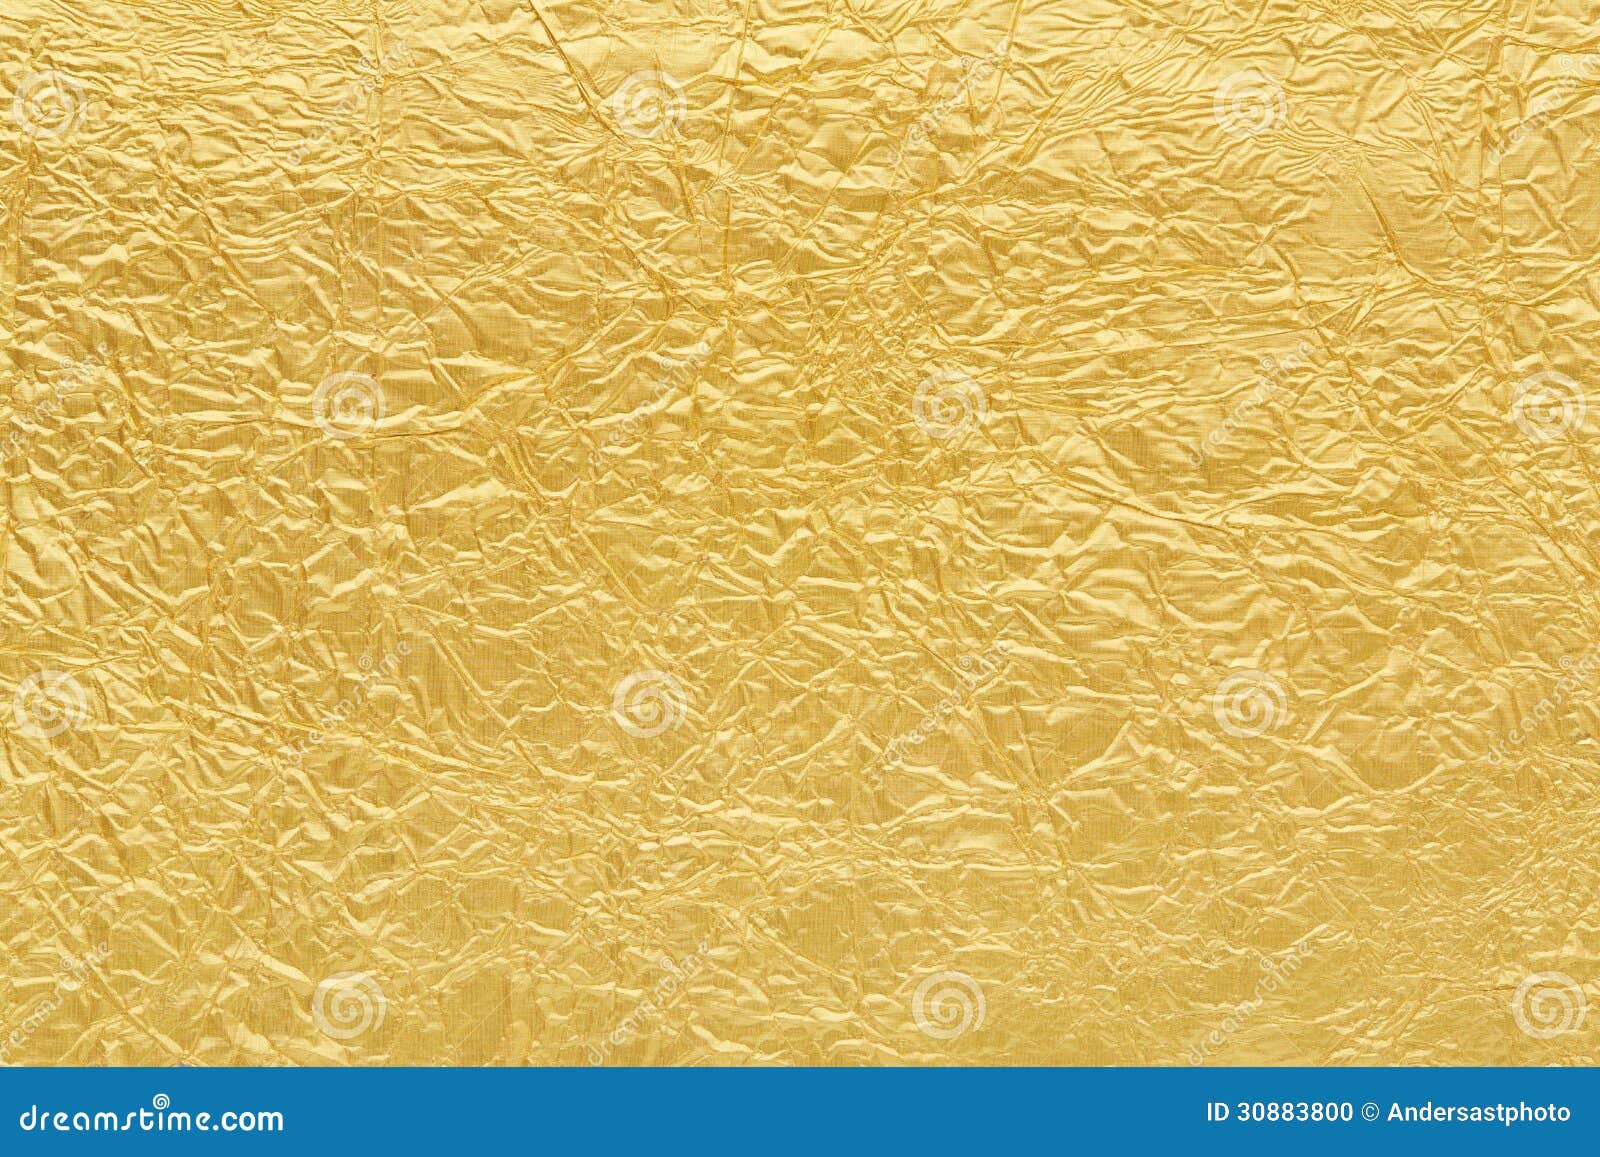 Texture de feuille d'or photo stock. Image du texture - 74122880